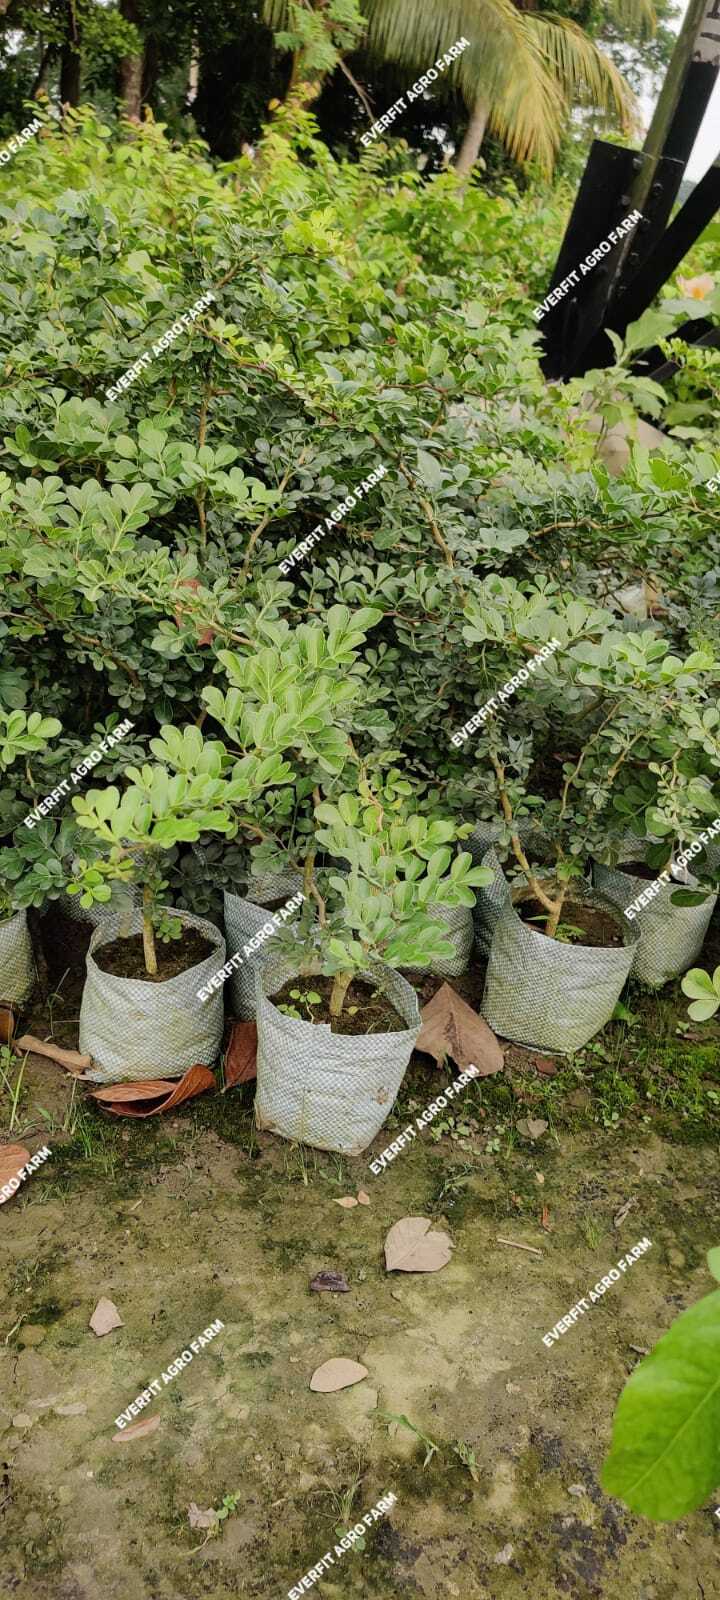 Thai Wood apple/bell plants